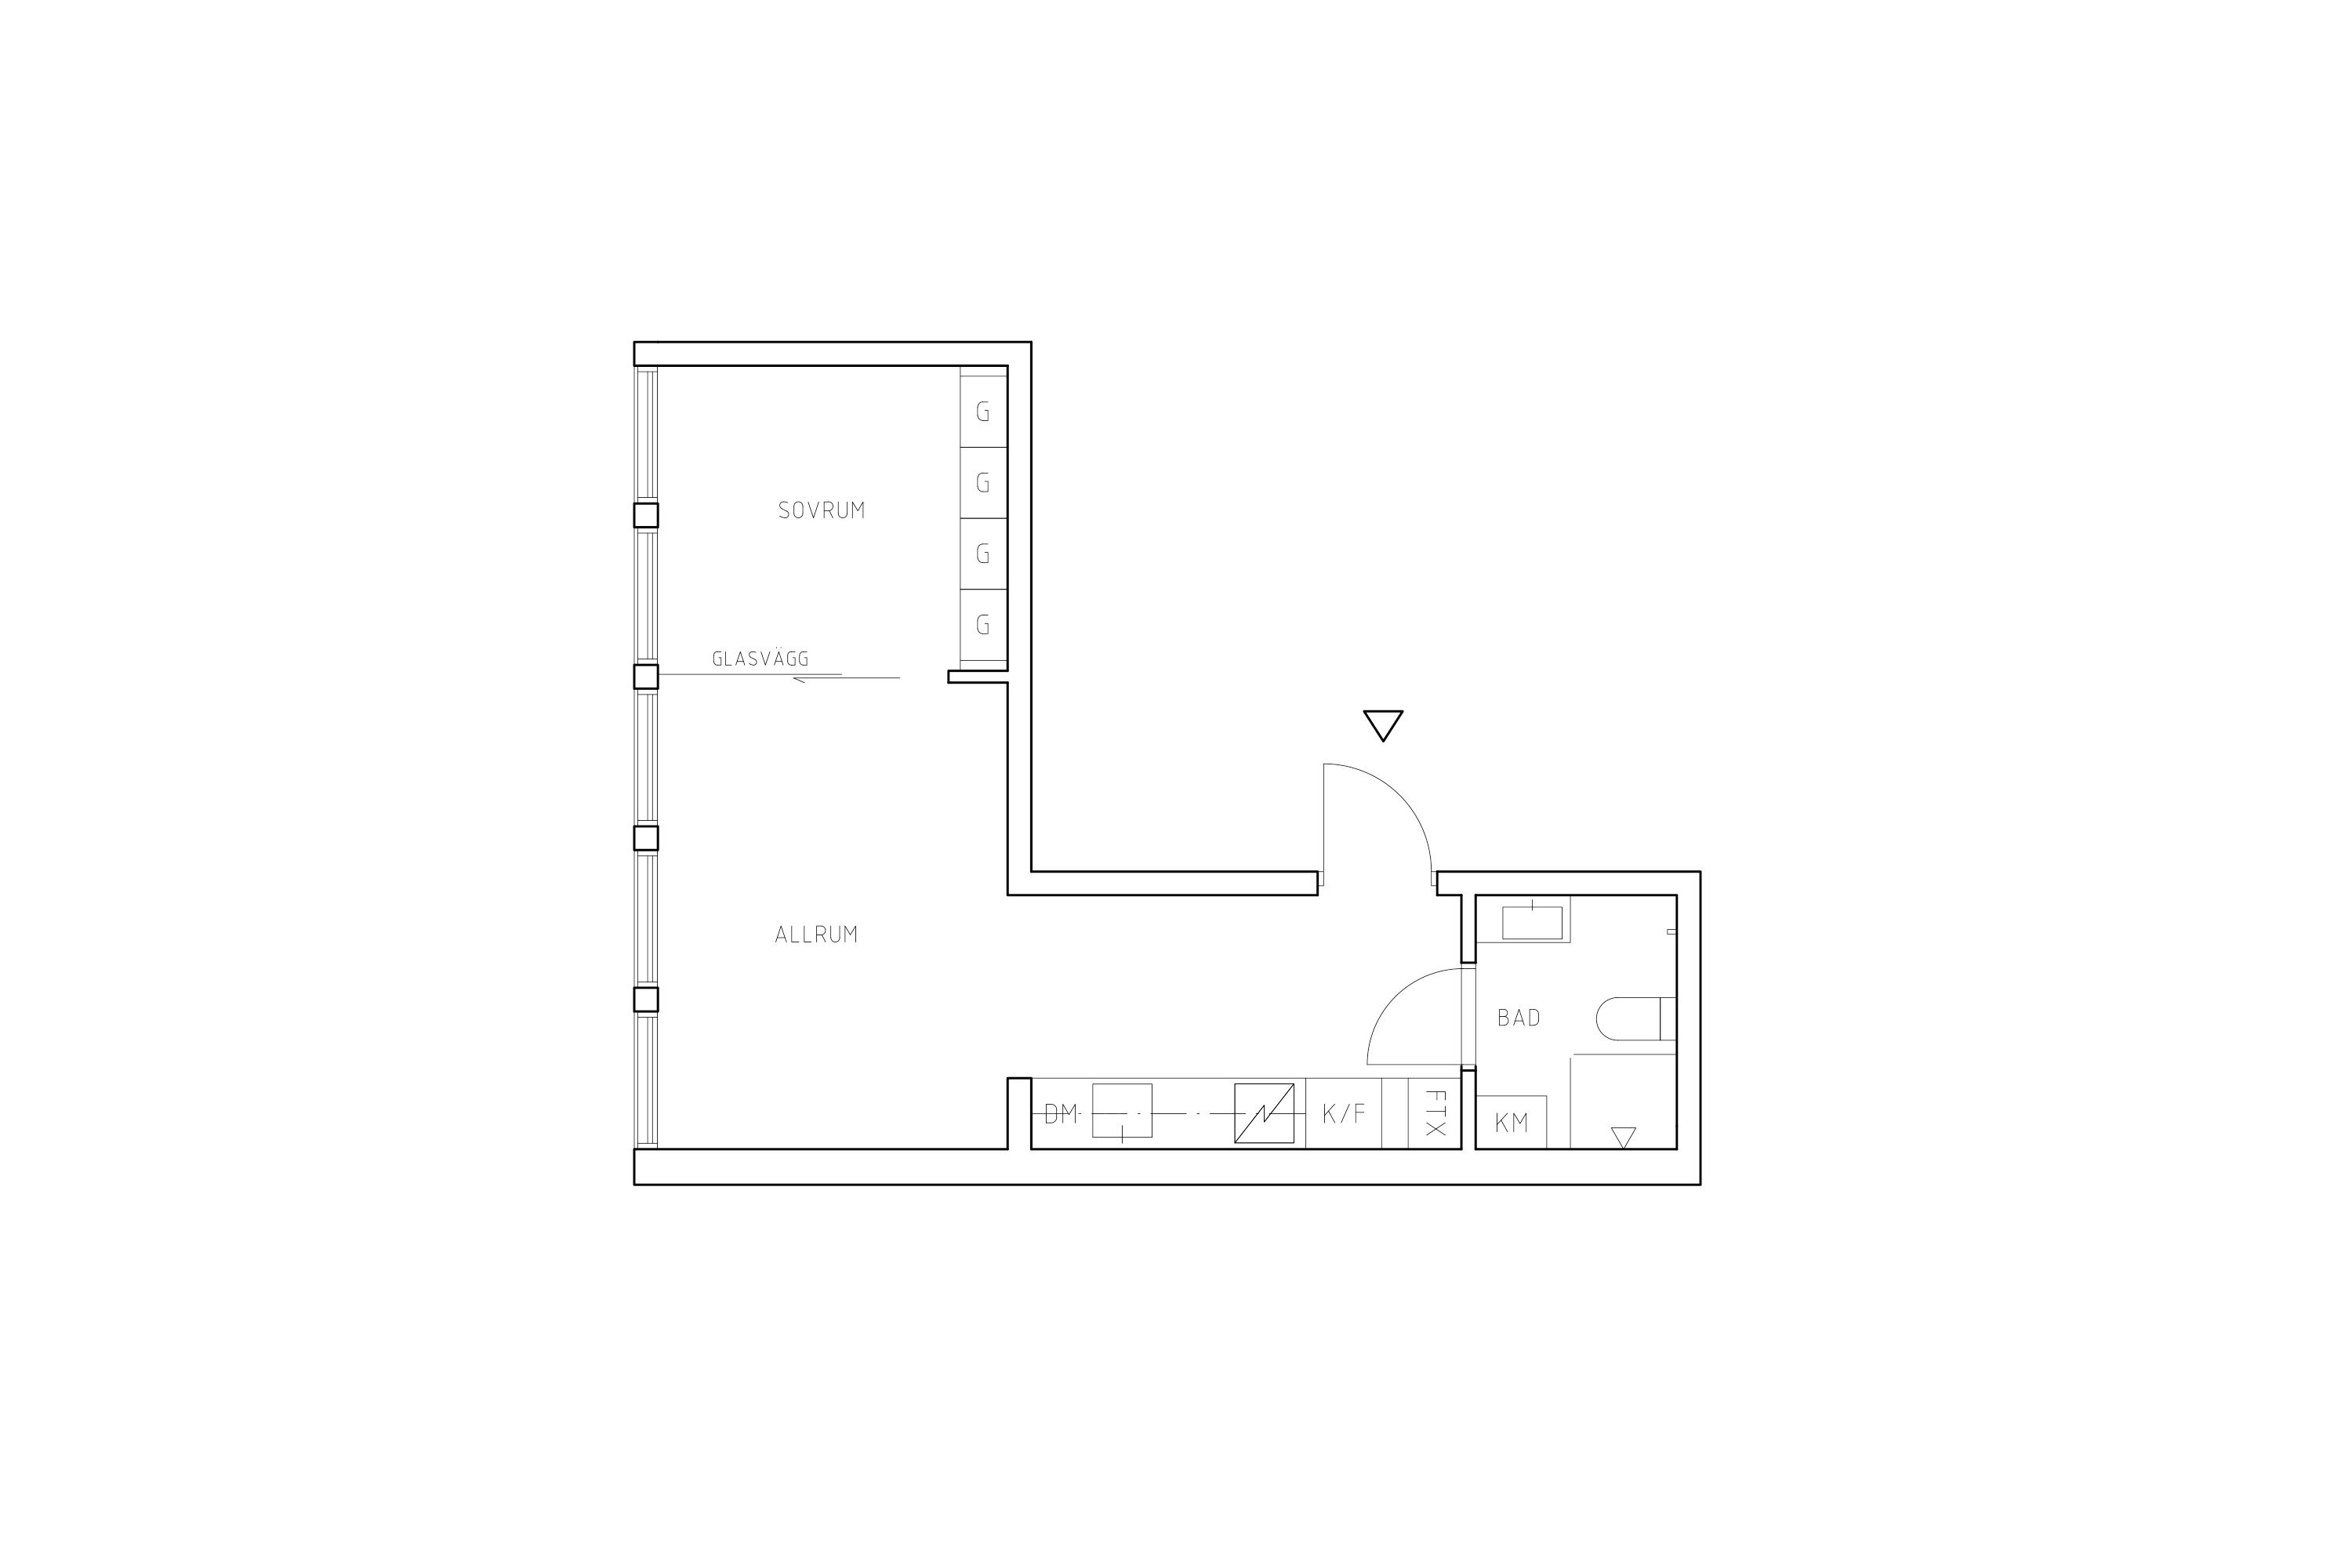 Planritning lägenhet 4001